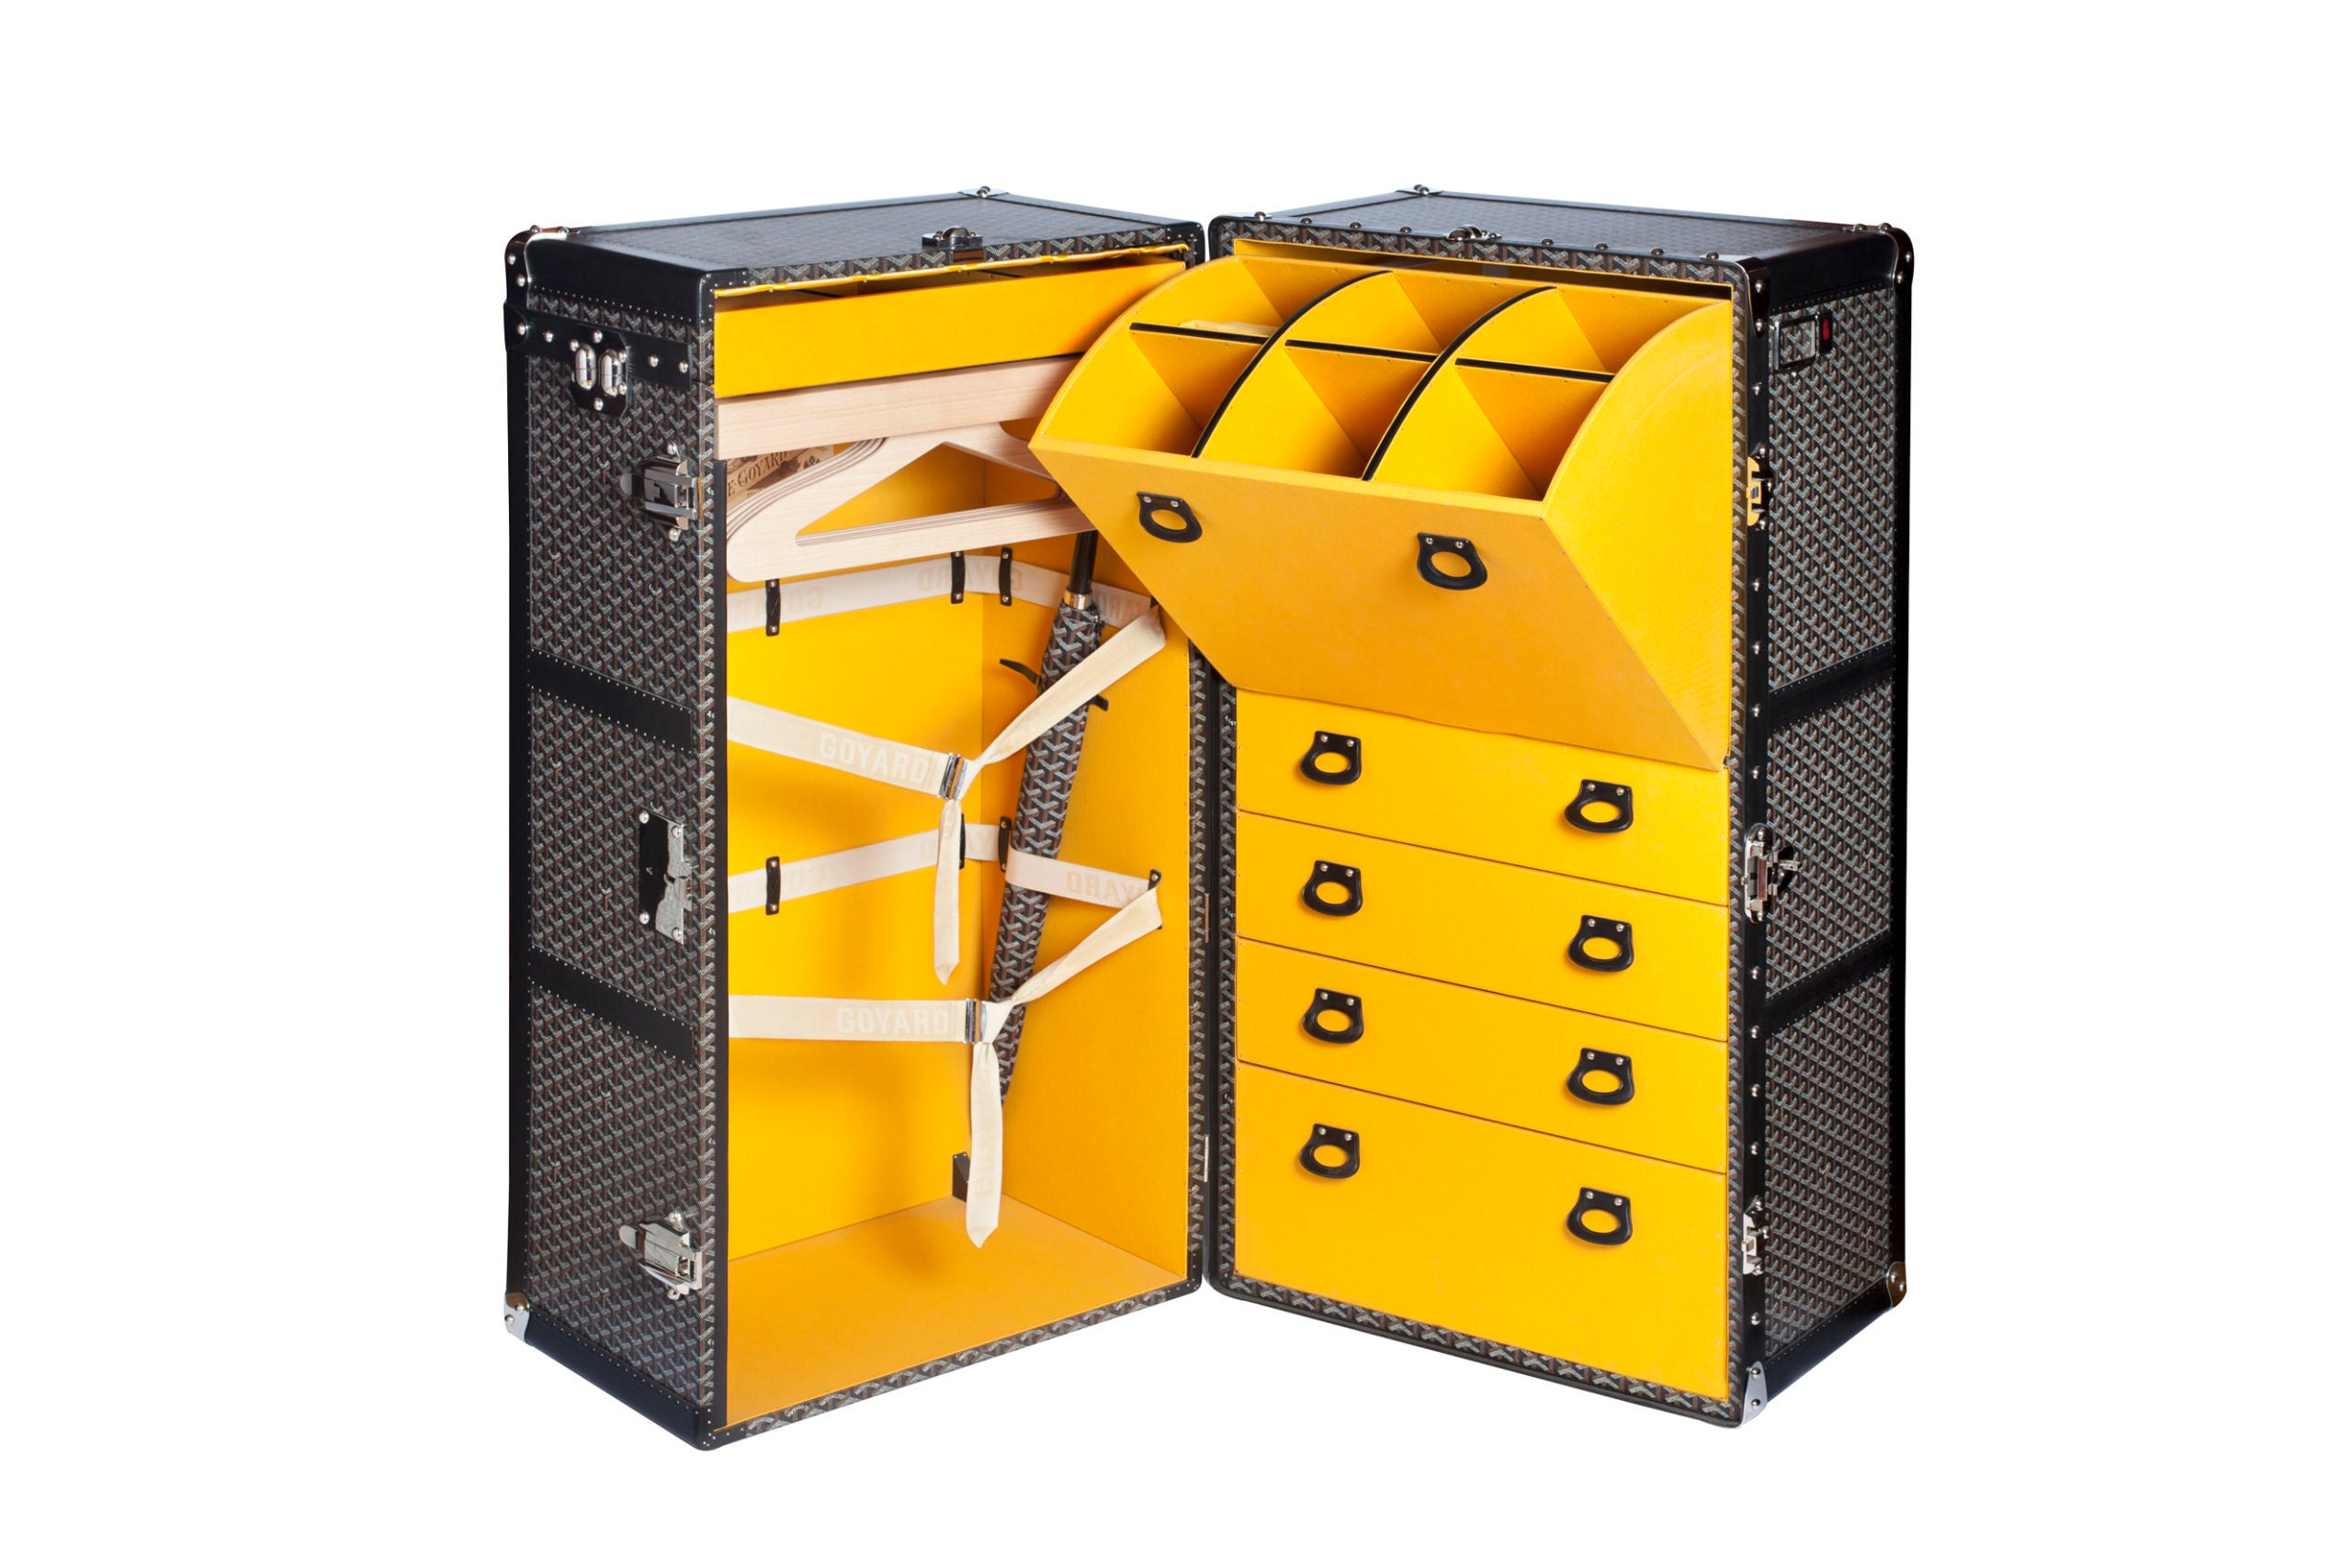 Goyard, Bags, Goyard Luggage Tag Yellow Leather Travel Trunk Briefcase  Duffle Rolling Luggage